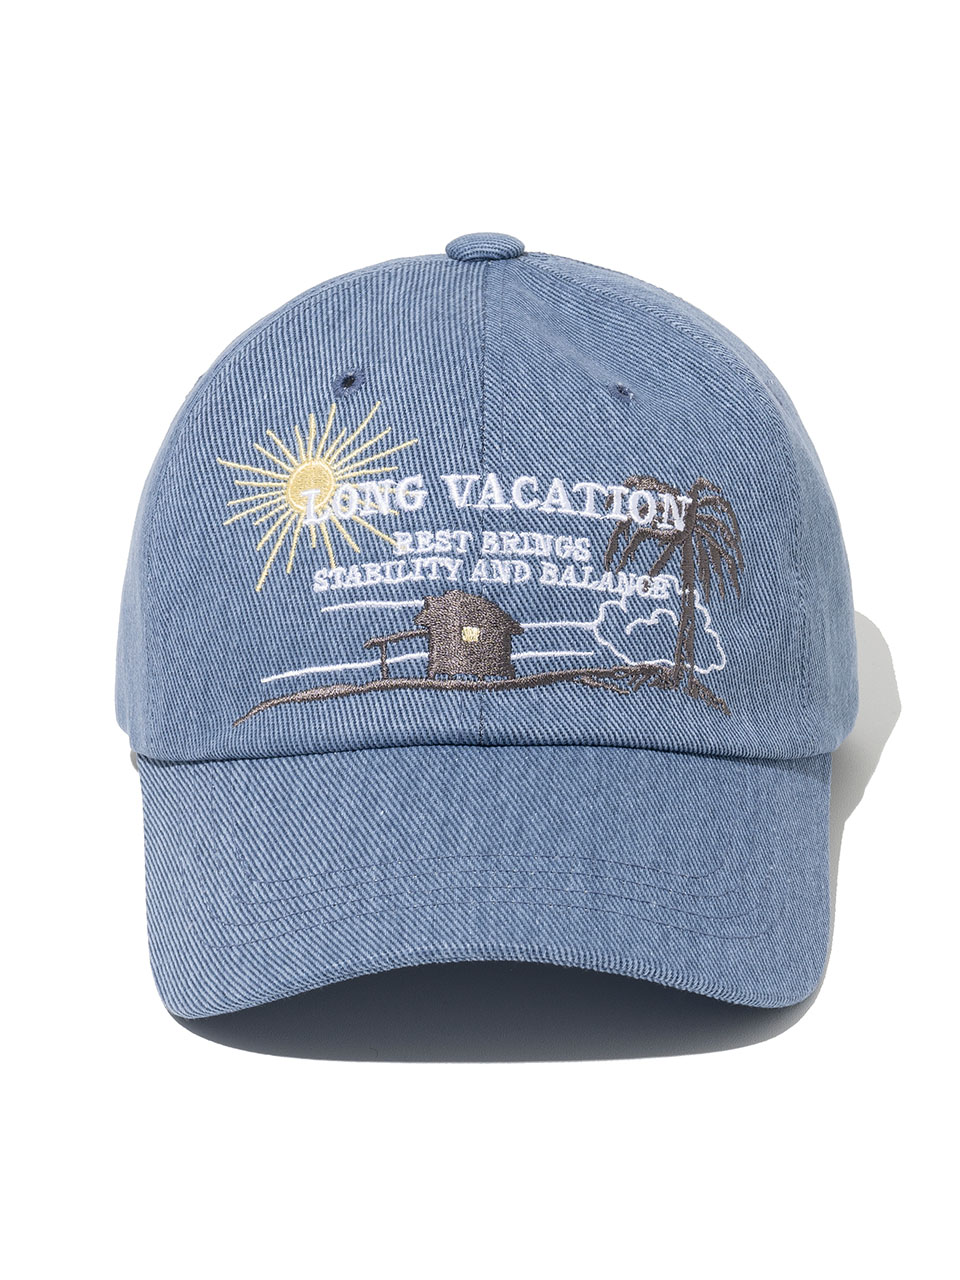 Long Vacation Ball Cap [Lake Blue]